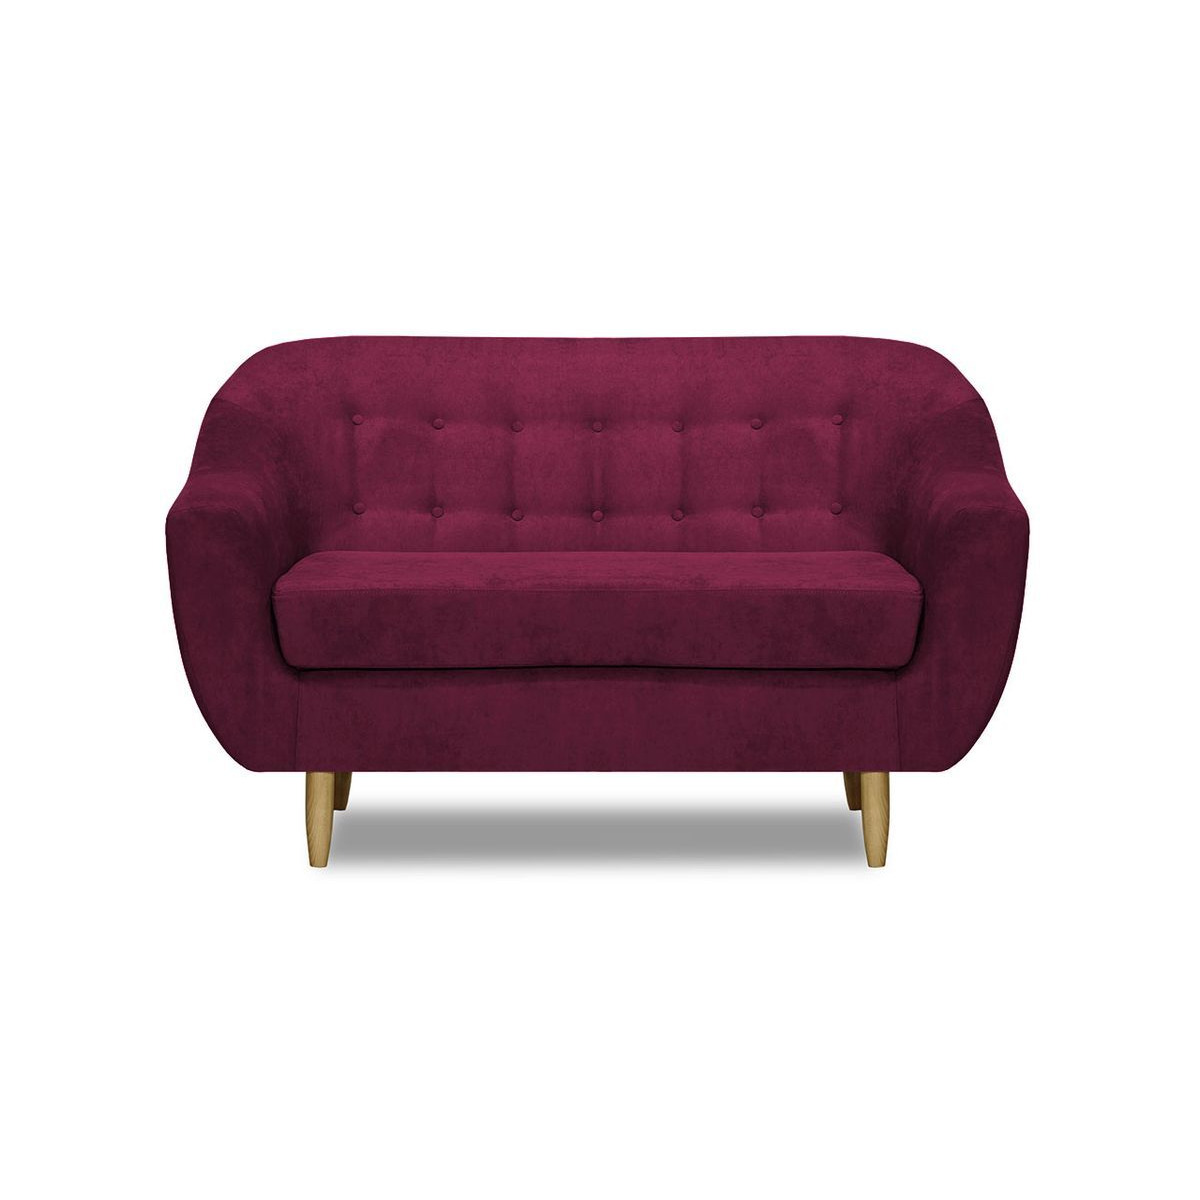 Bont 2 Seater Sofa, dark pink - image 1